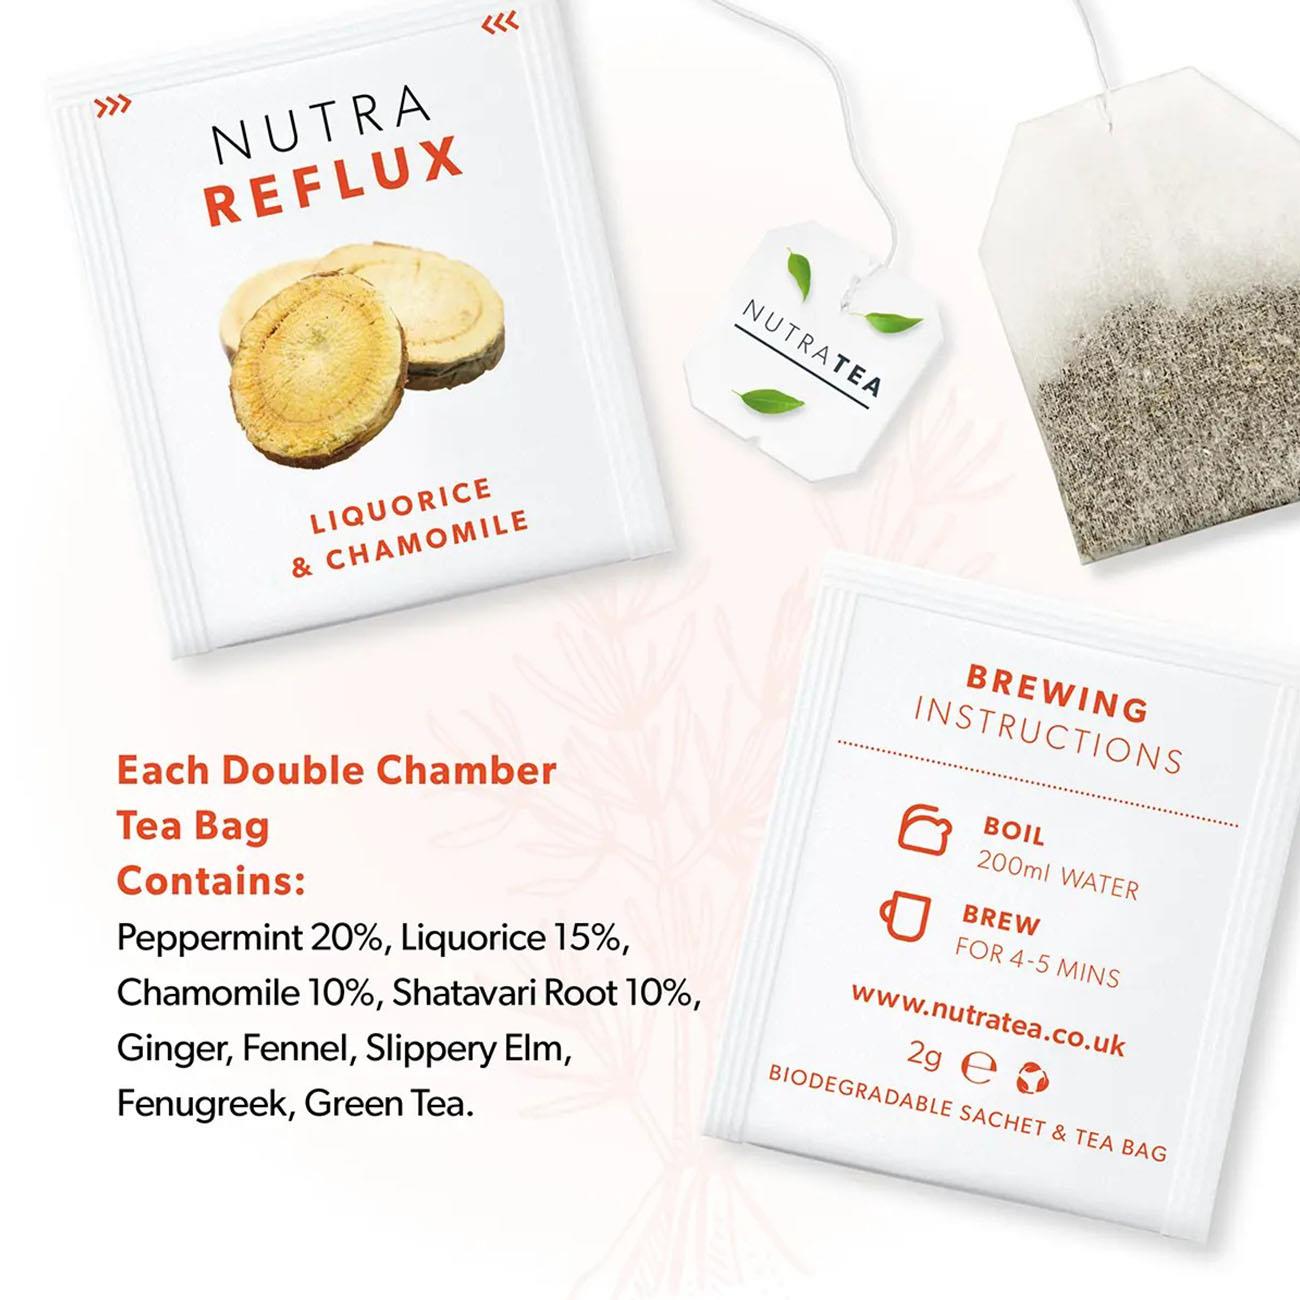 Nutratea Nutra Reflux Tea Herbal Tea 20 Bags